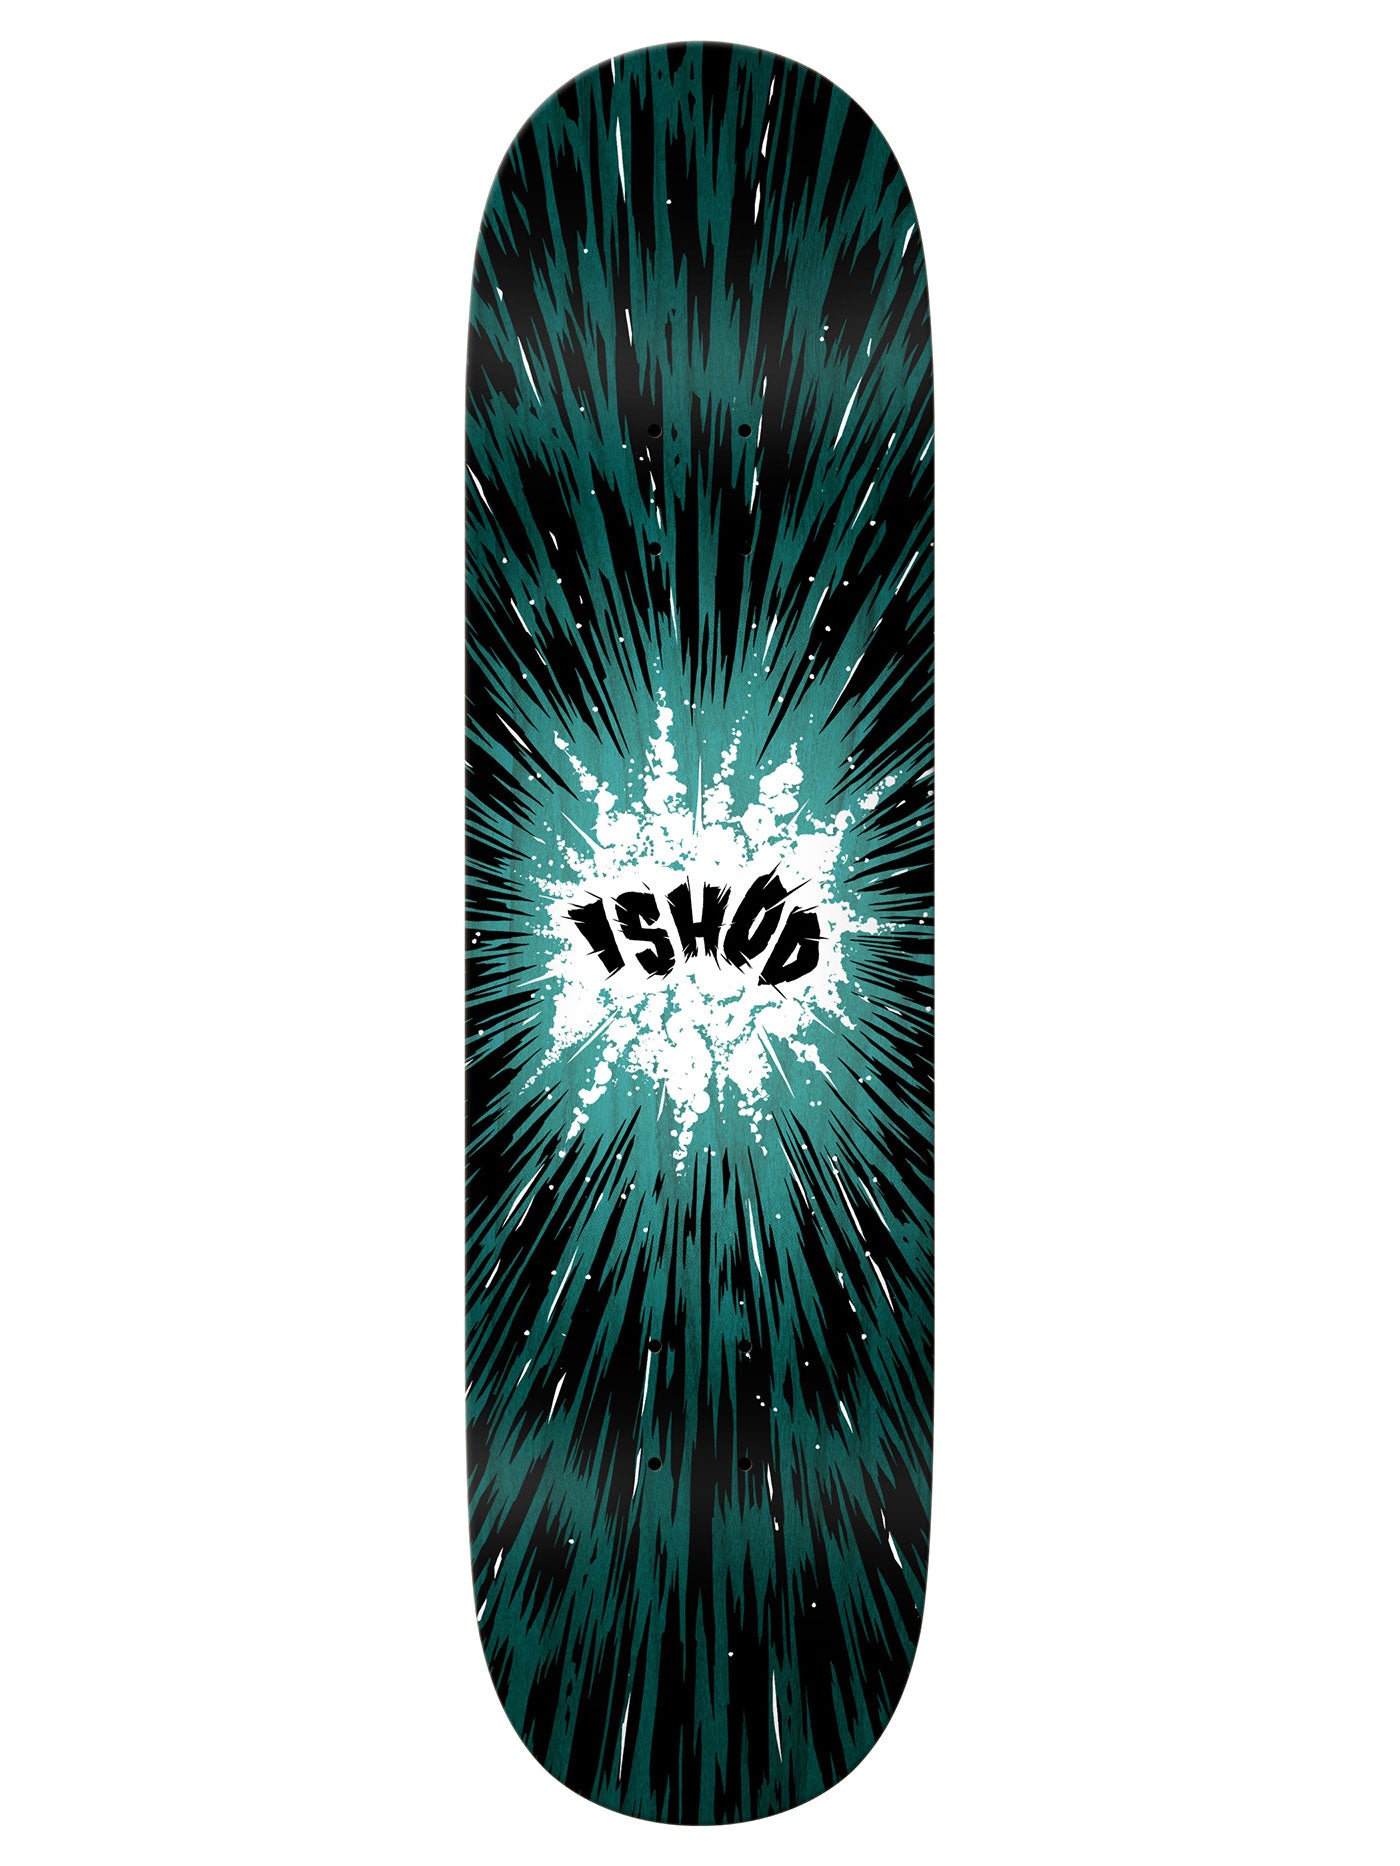 Real Ishod Detonate 8.38 Skateboard Deck